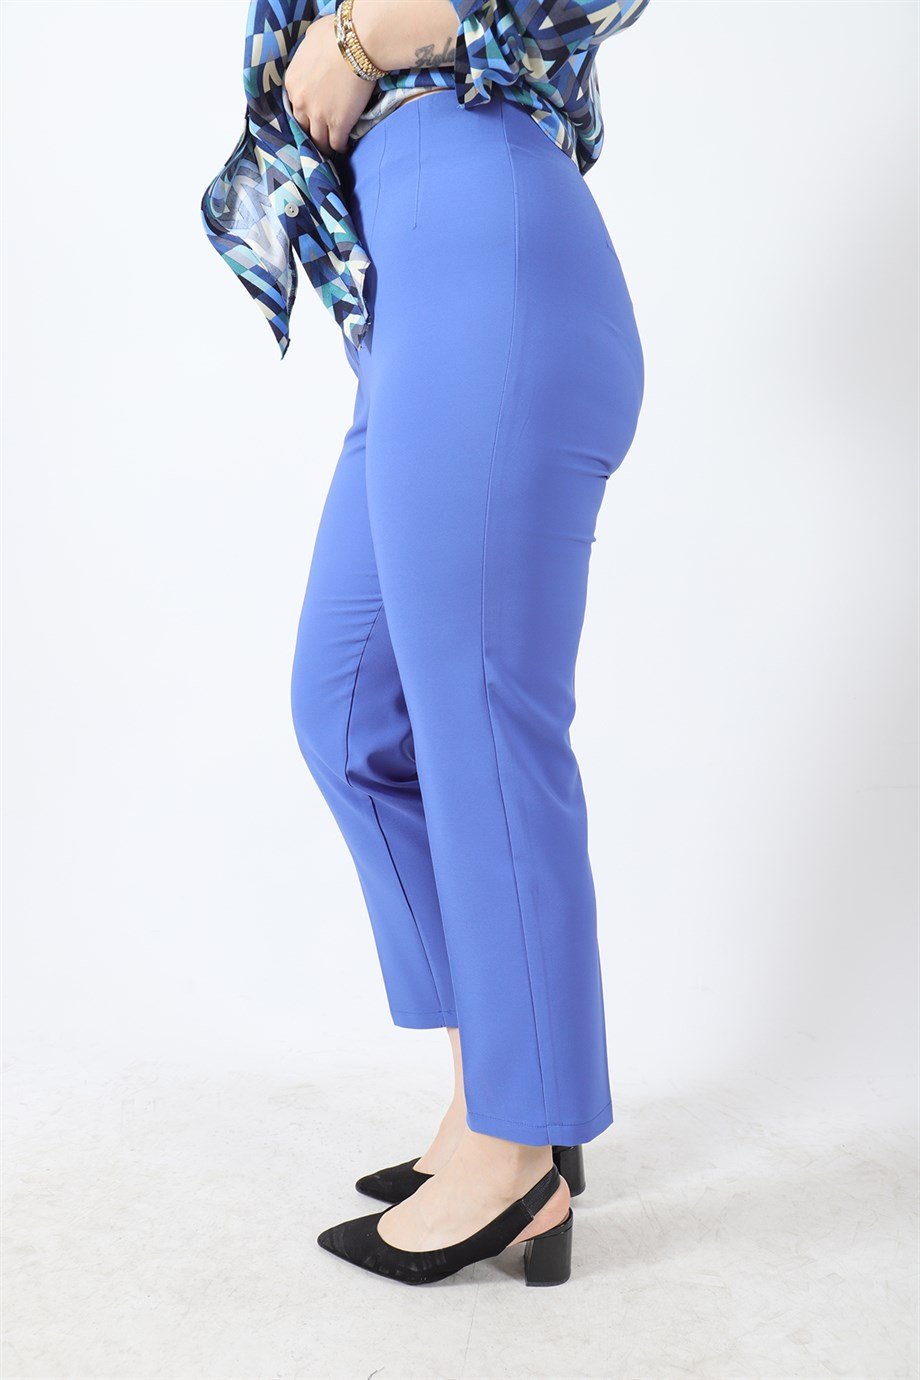 Büyük Beden Deniz Pantolon İndigo | büyük beden bayan pantolon modelleri ve  fiyatları | Bedrinxxl